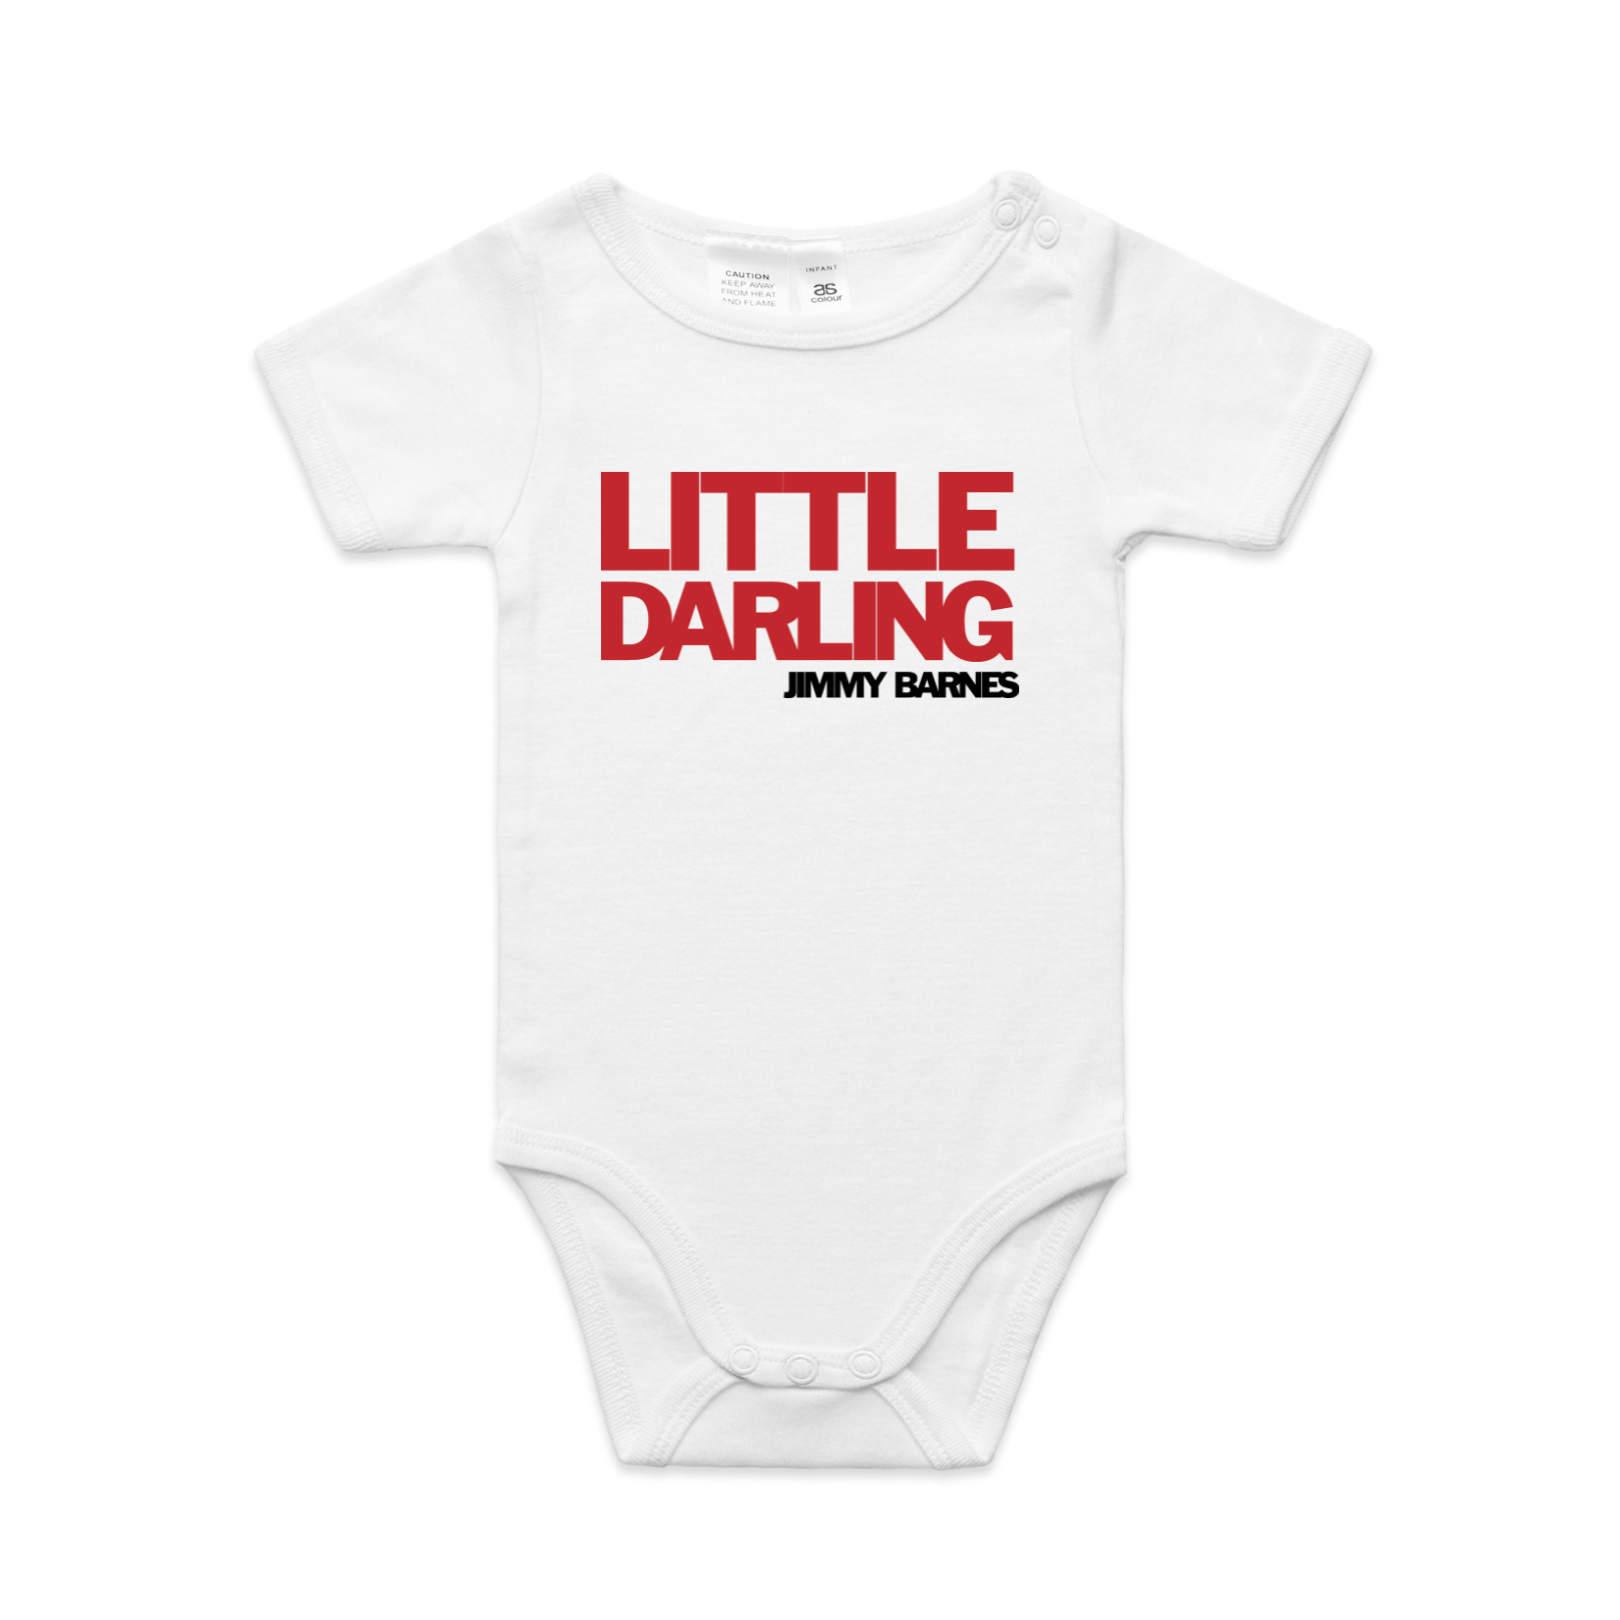 Little Darling | Jimmy Barnes | Baby Romper